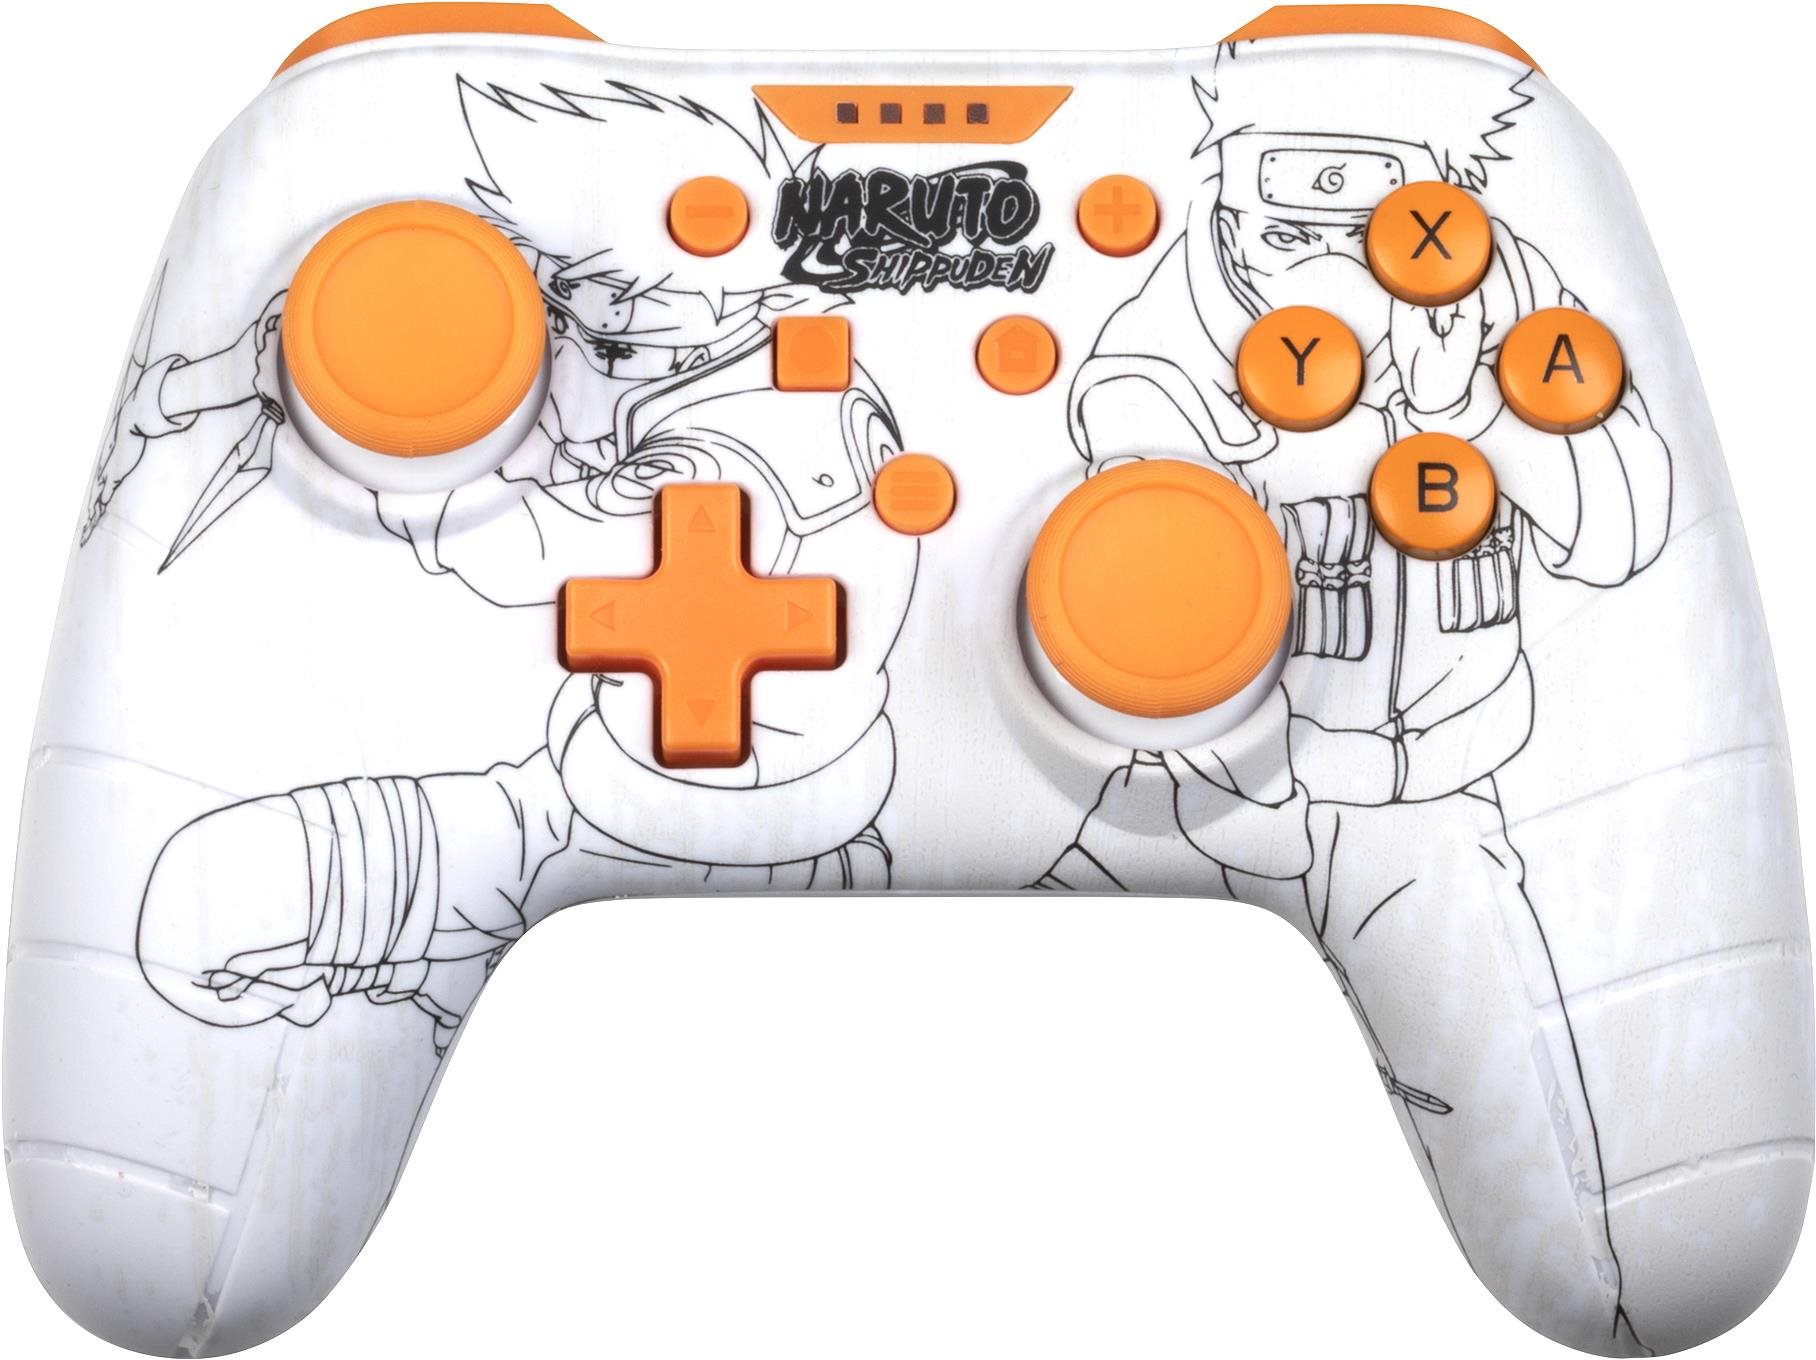 Konix Naruto Nintendo Switch/PC White Controller